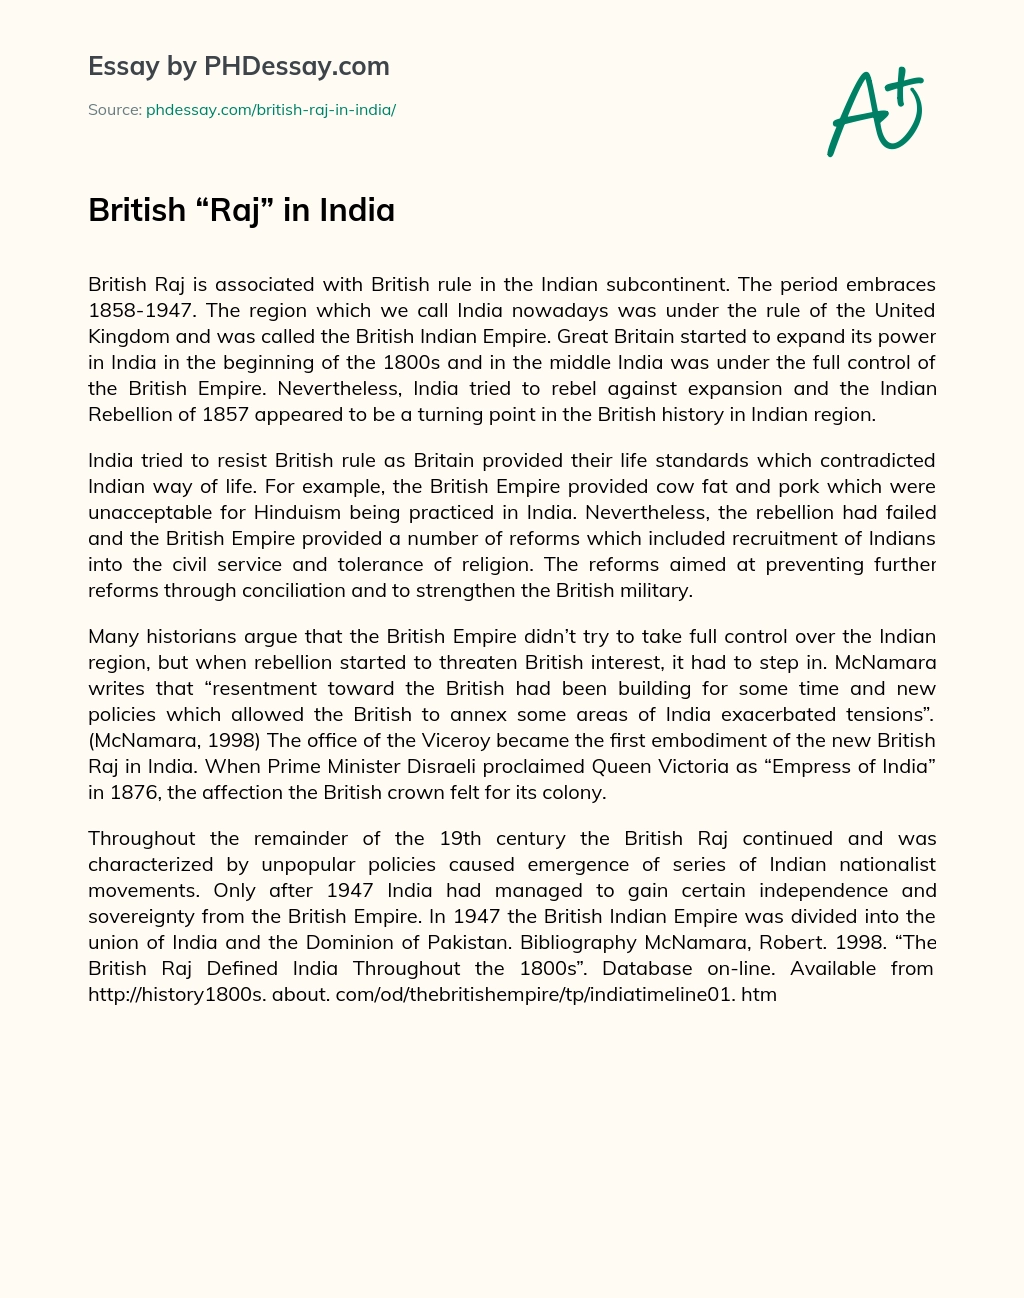 British “Raj” in India essay